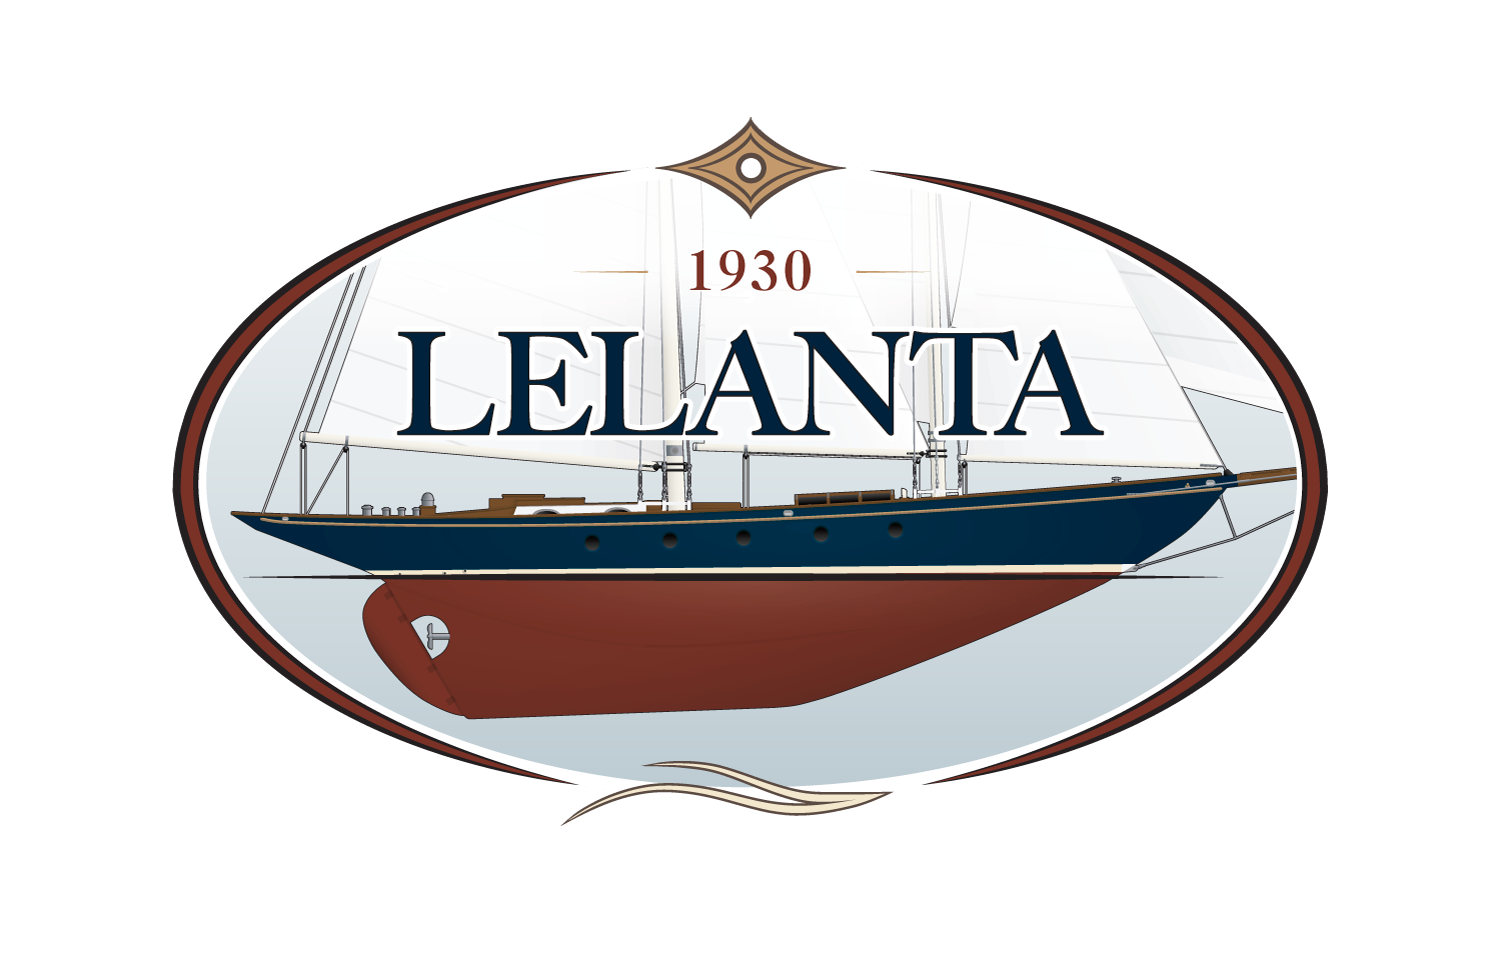 Lelanta Yacht Charters | Sag Harbor Sailing